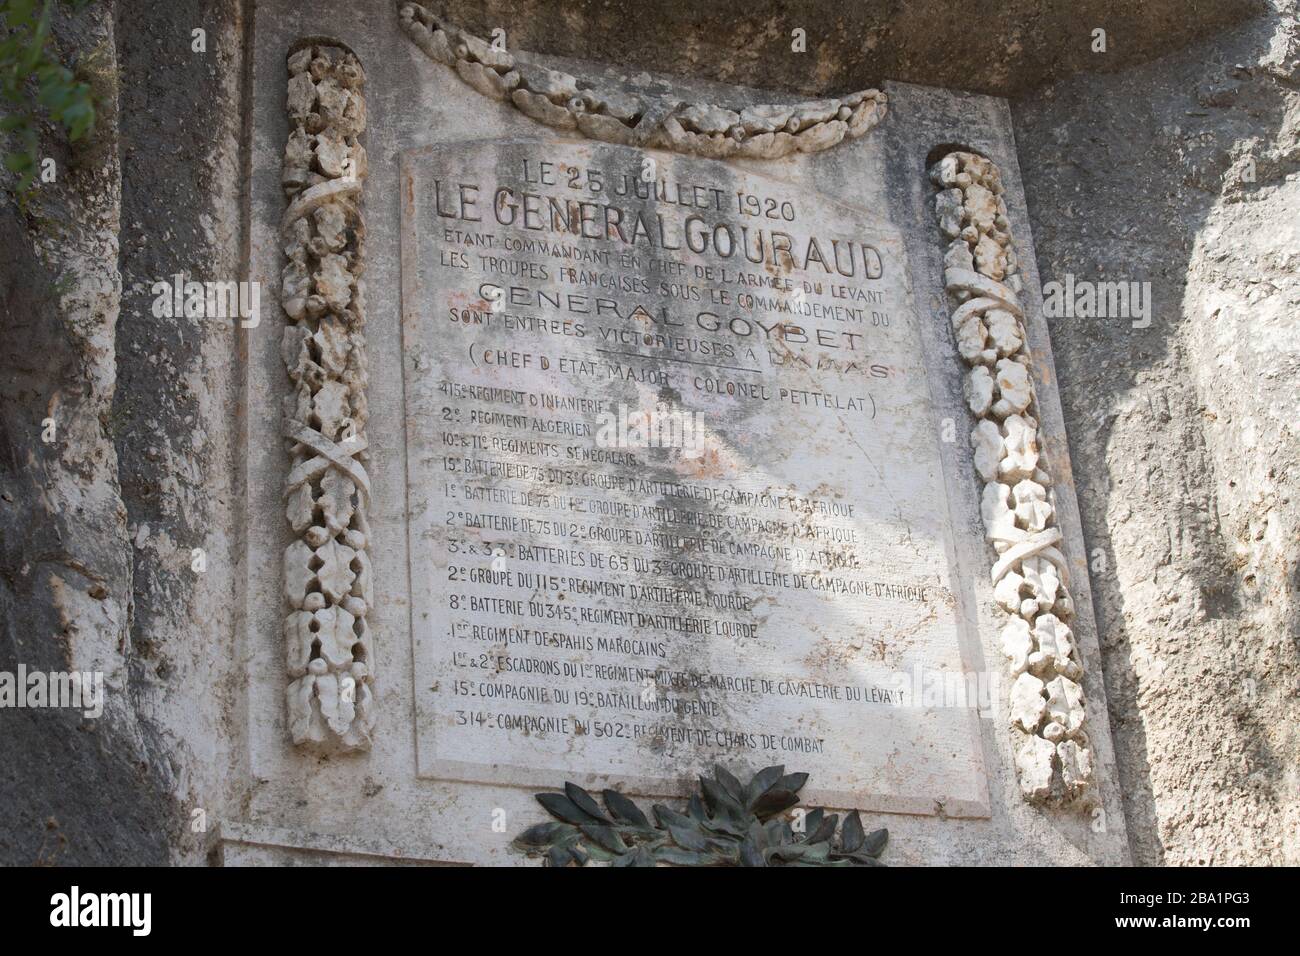 Iscrizione lasciata dalle truppe francesi sotto il generale Gouraud. Stele commemorative di Nahr el-Kalb, Libano. Nahr al-Kalb è l'antico fiume Lycus. Leban Foto Stock